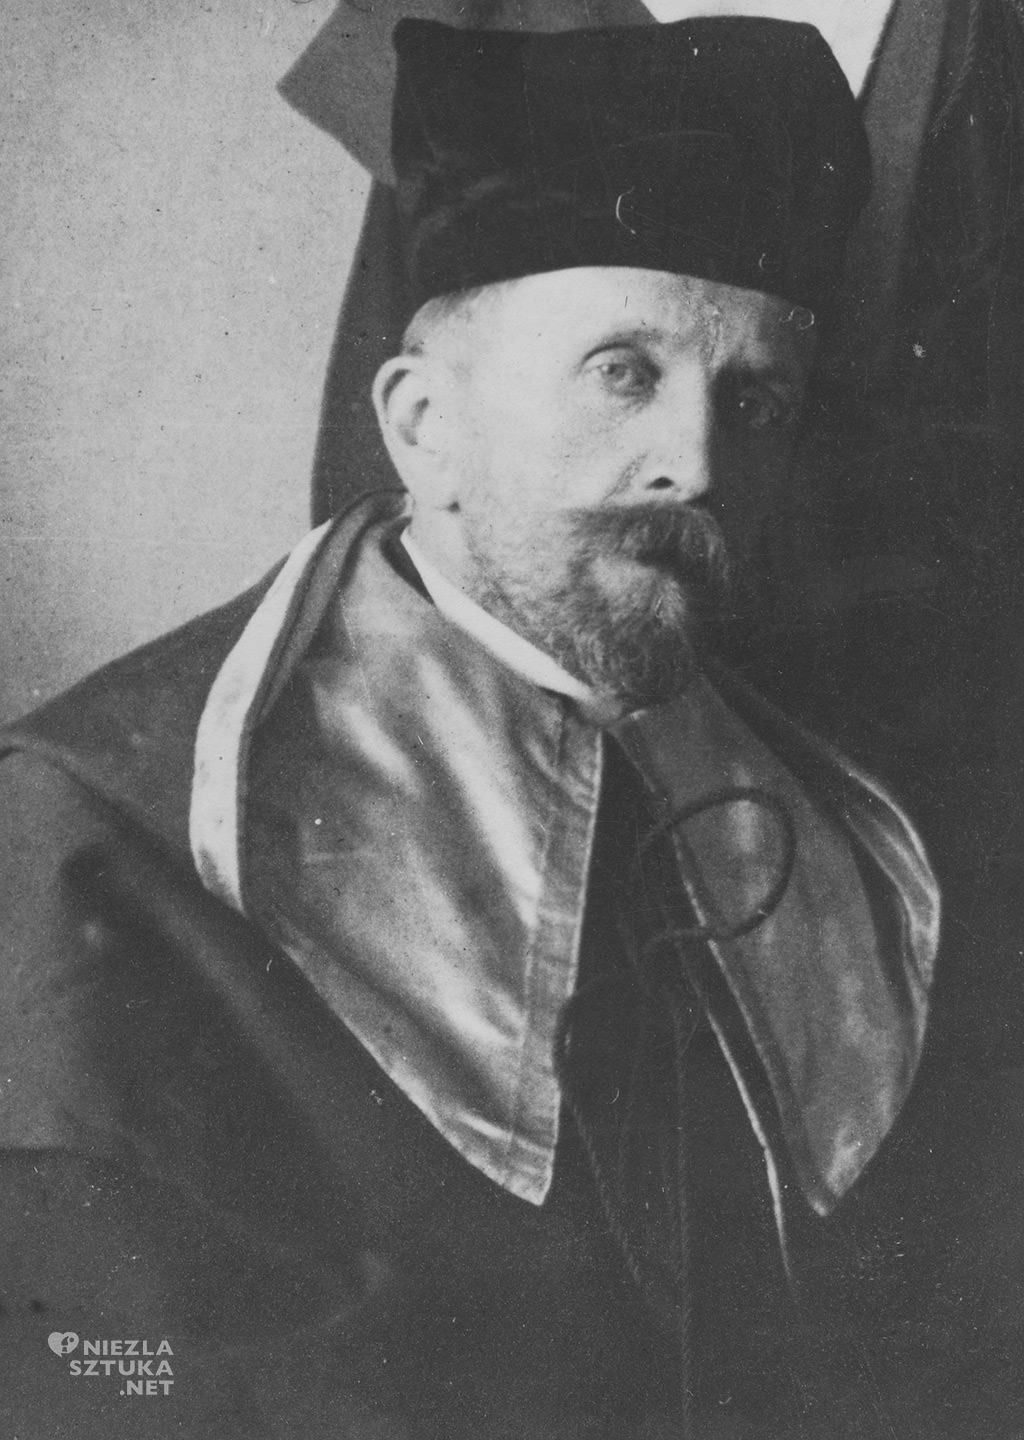 Ferdynand Ruszczyc